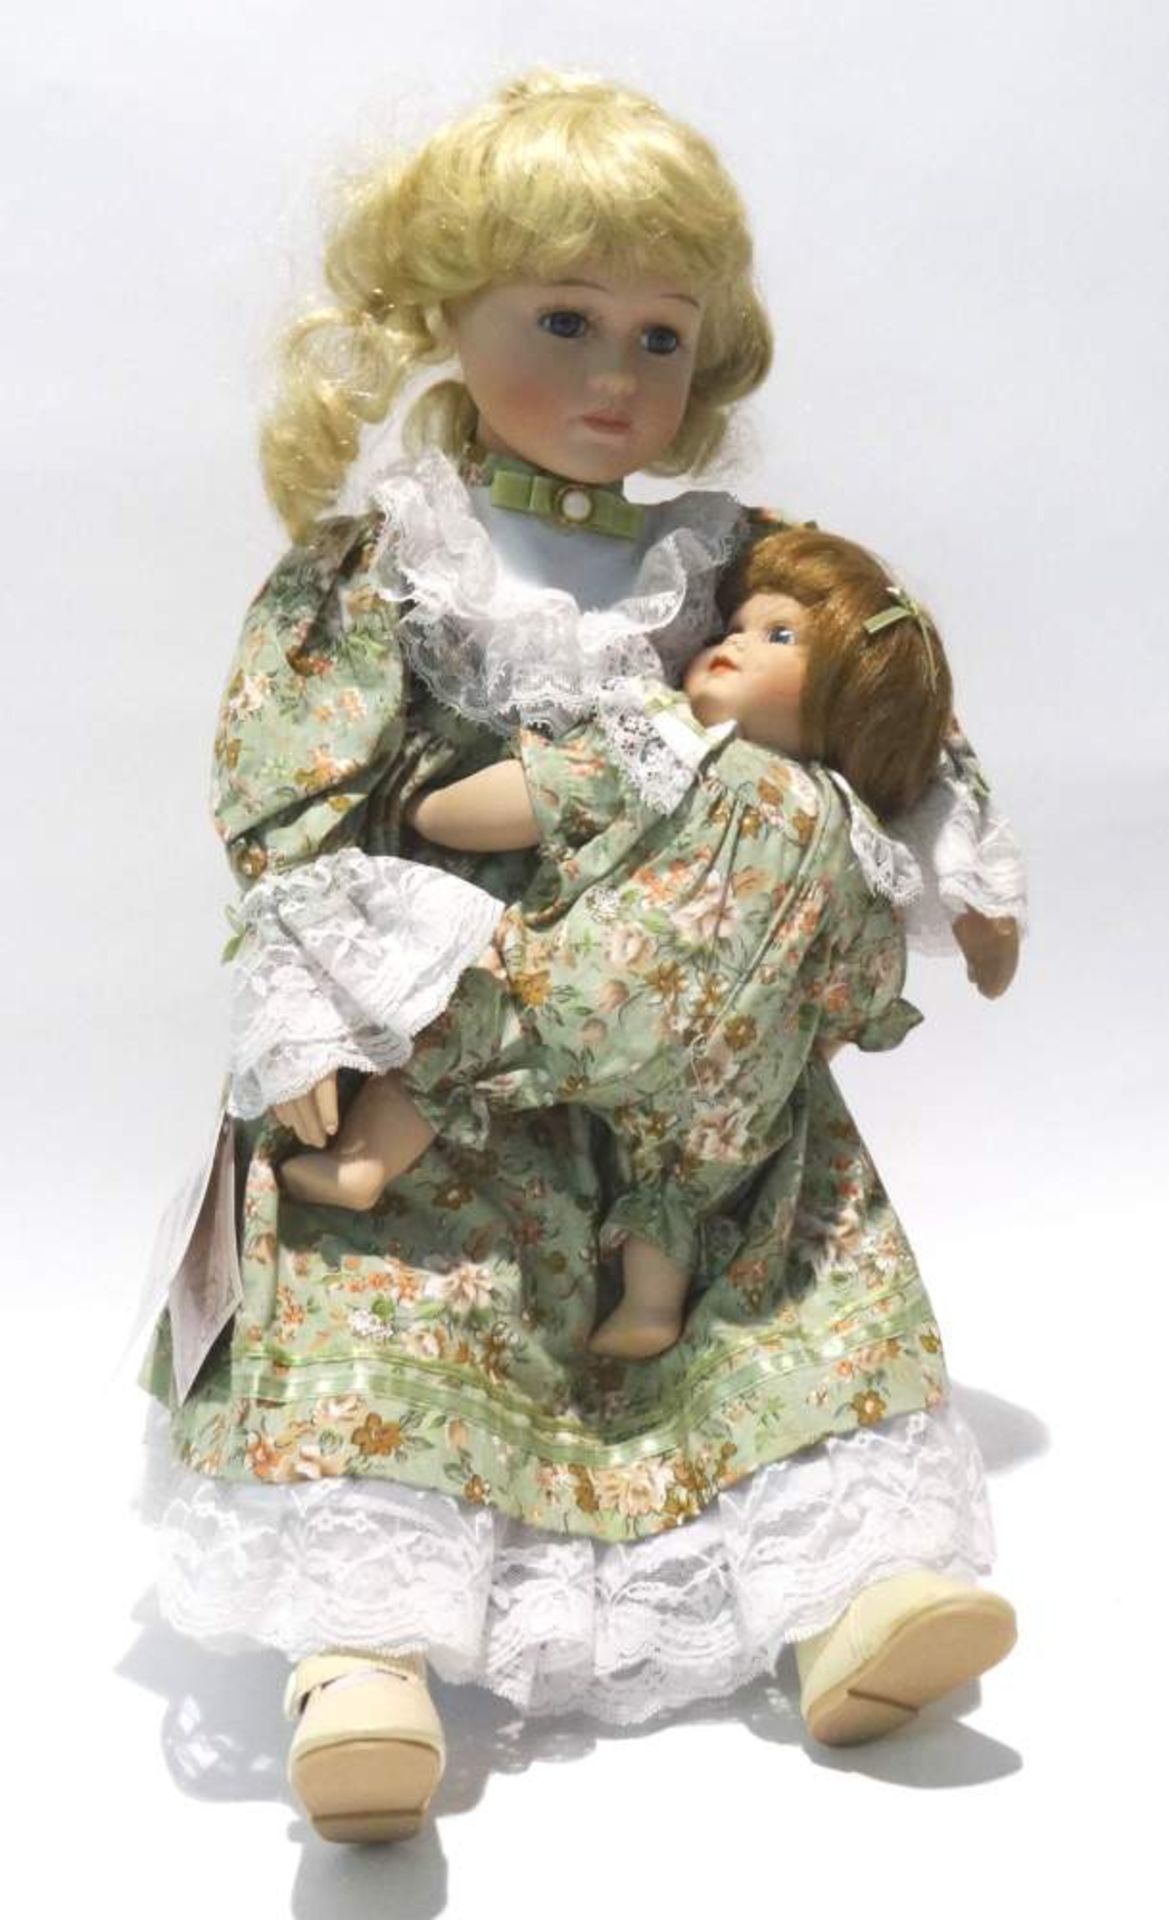 Mutter-Kind Puppemit Aufsteller, Höhe ca. 47cm, Puppe mit Echthaar, sehr schöne Handarbeit